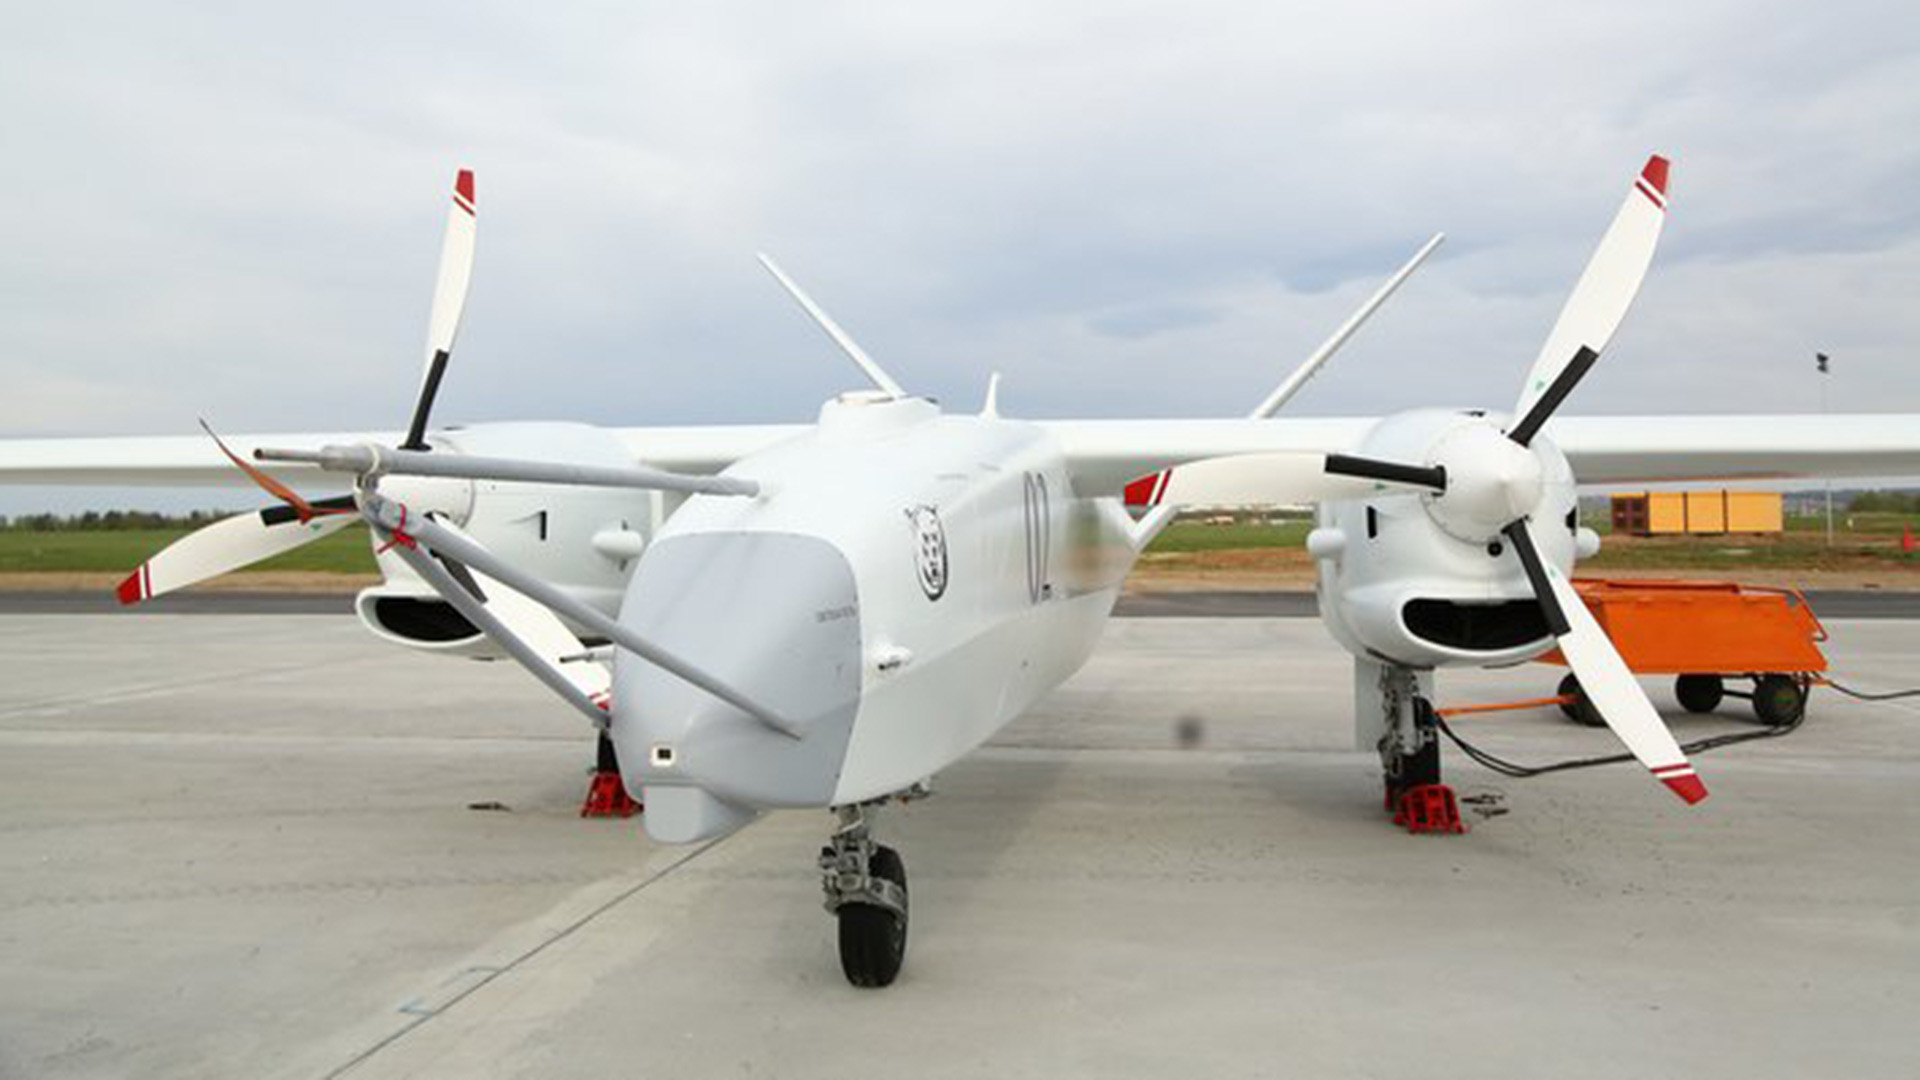 Drone kelas berat “Altius”.